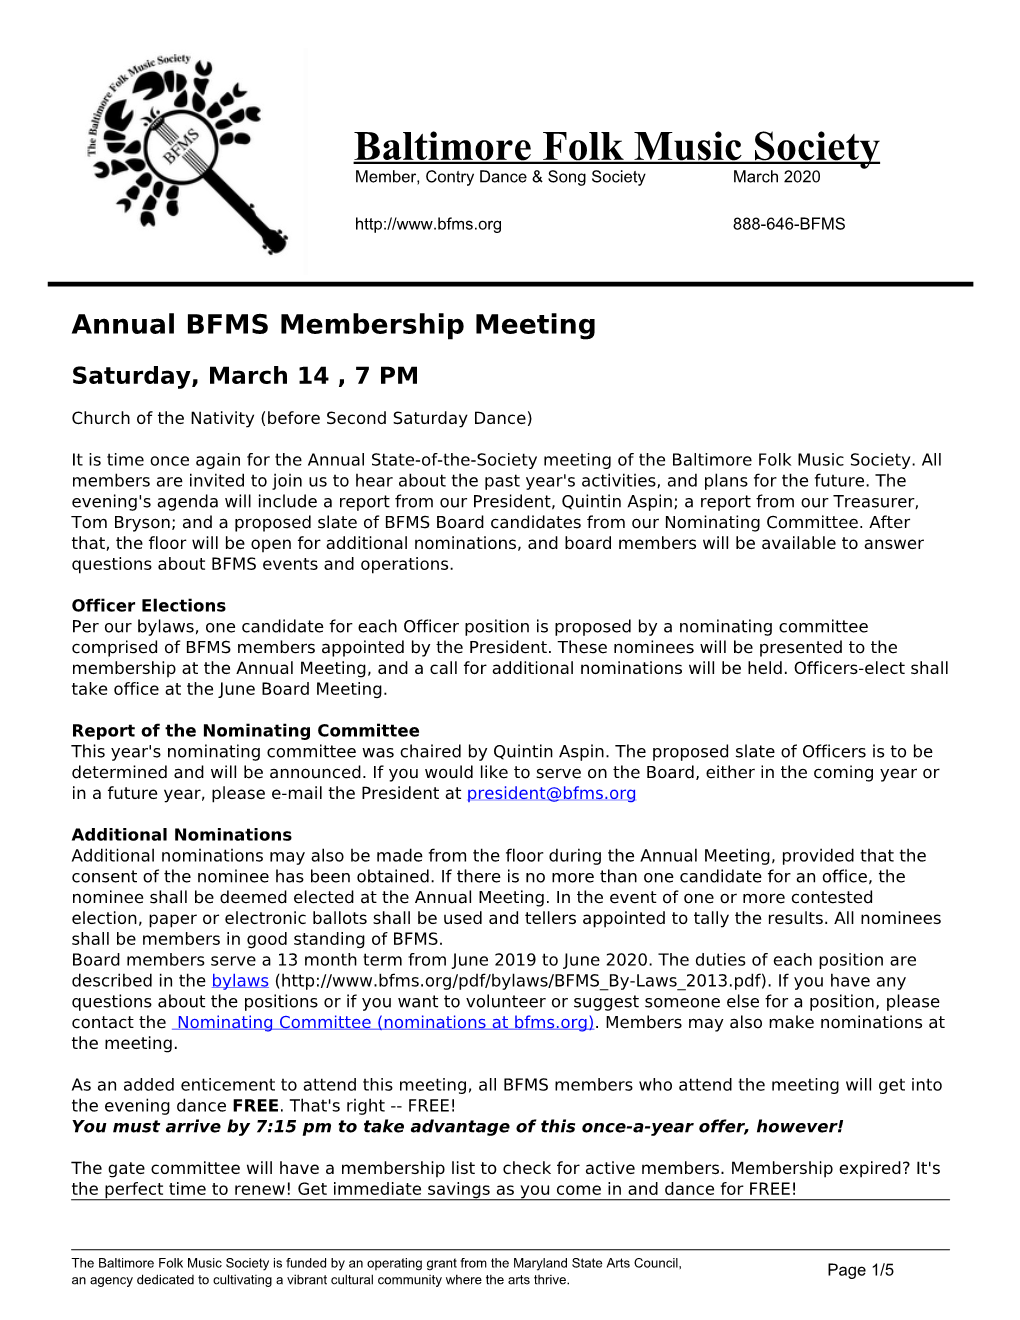 BFMS Newsletter